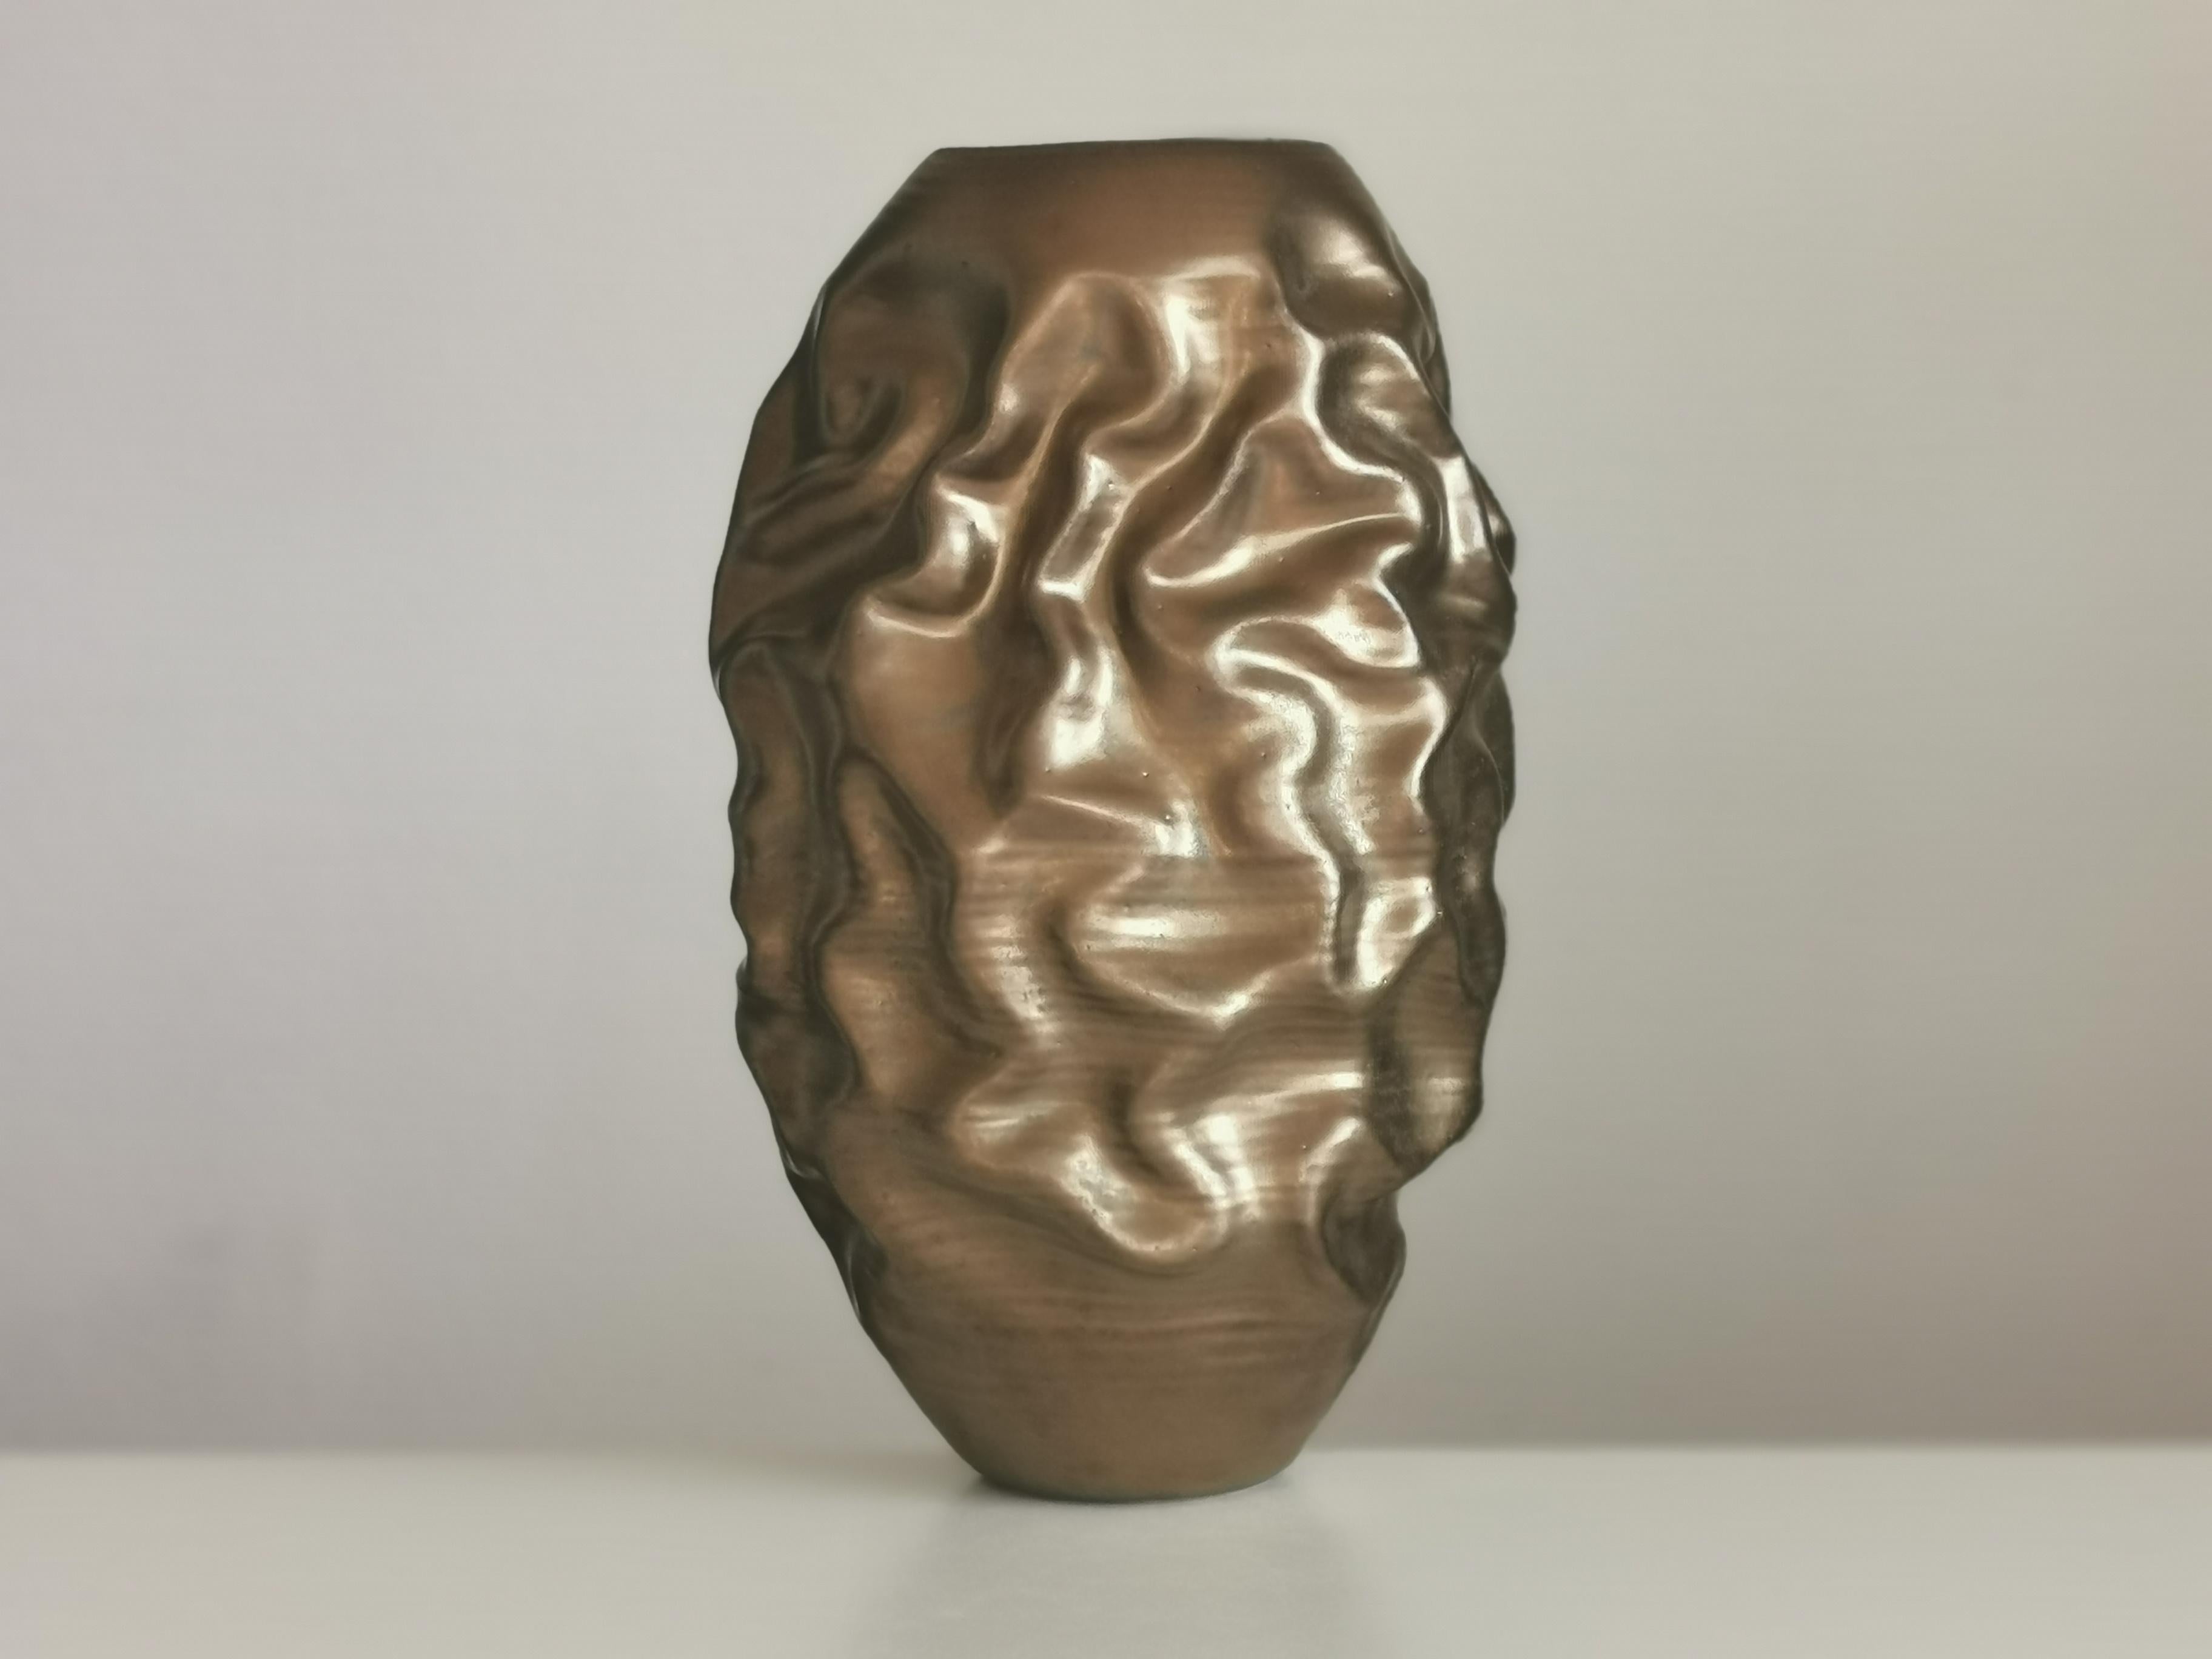 Tall Golden Dehydrated Form N.86, Contemporary Ceramic Sculpture, Objet D'art 2